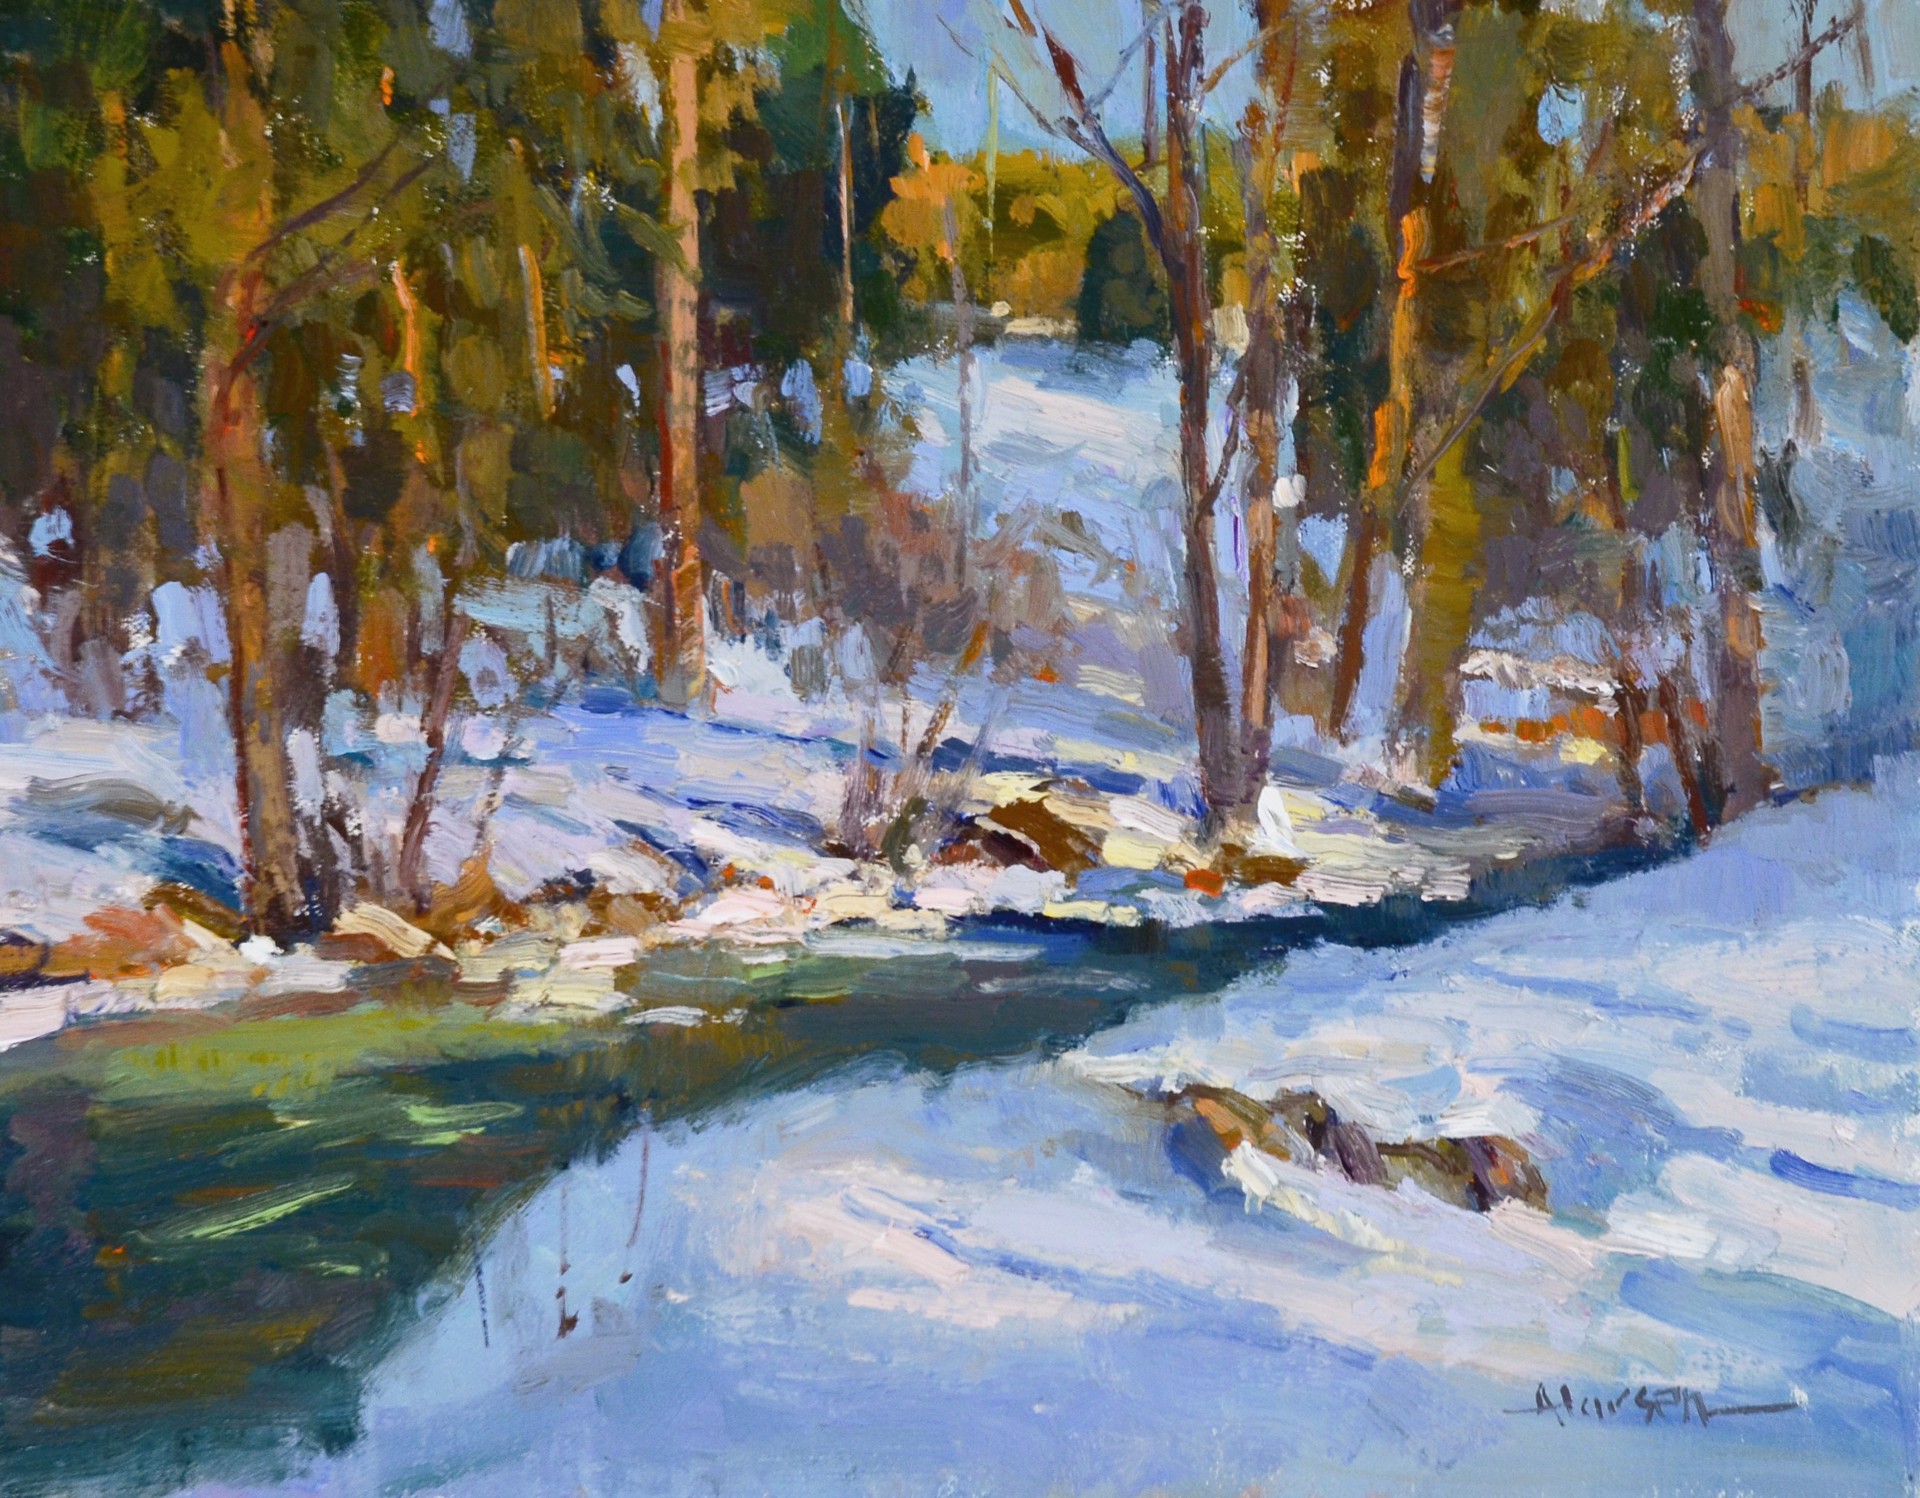 Beecher Creek Warmth by Ann Larsen